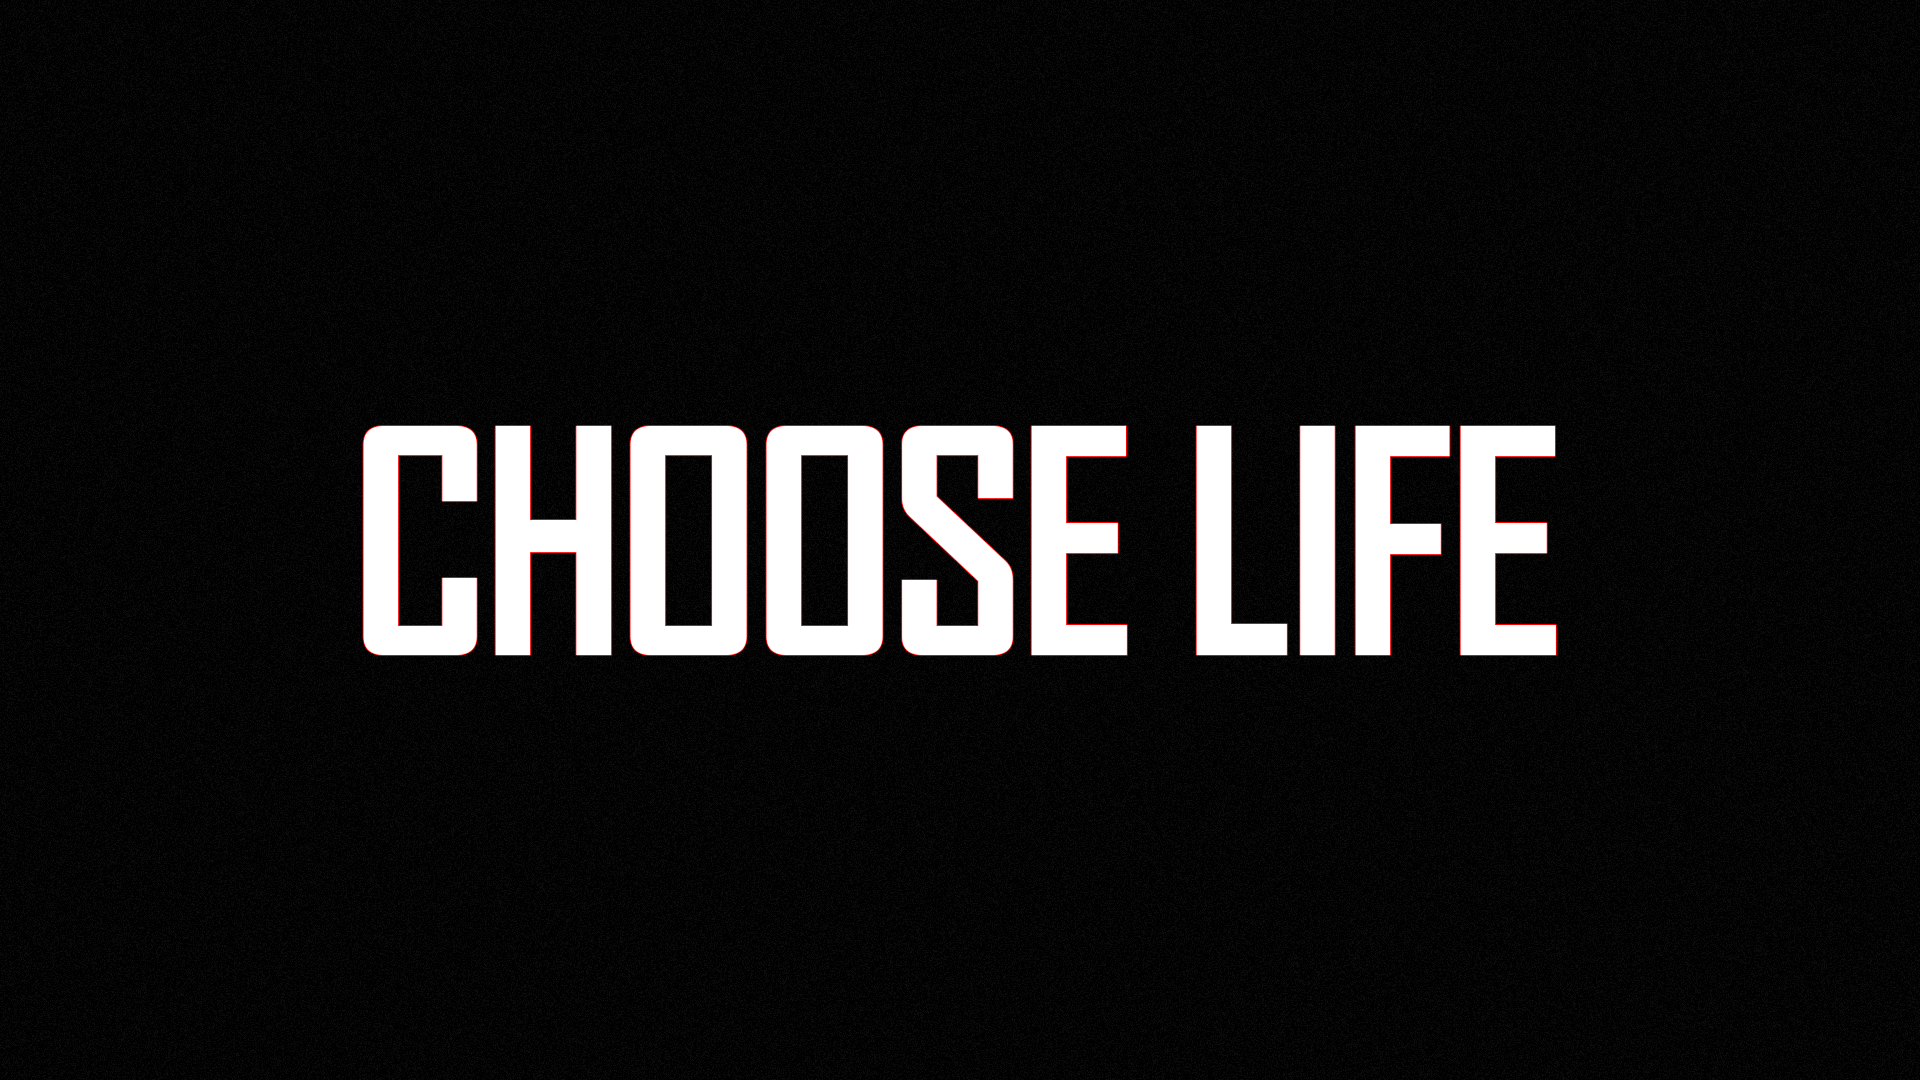 Choose life choose future. Life. Choose Life. Choose Future choose Life. Choose your Life.